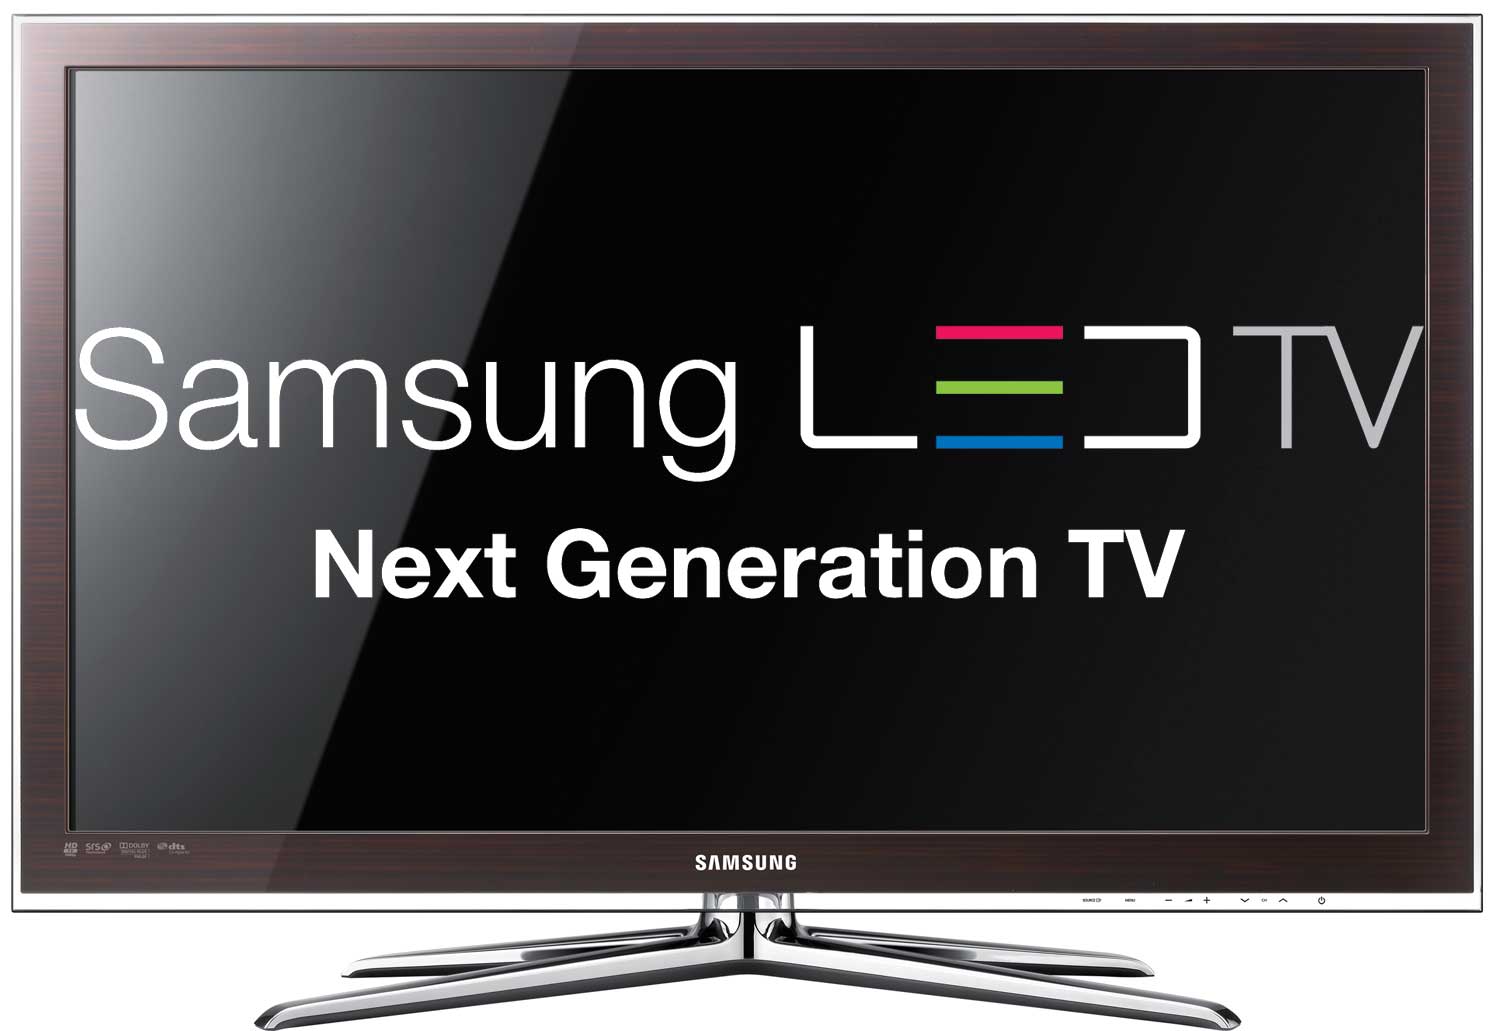 Samsung 40 Inch L.E.D TV (Model 5000) antalya spot 2 el eşya